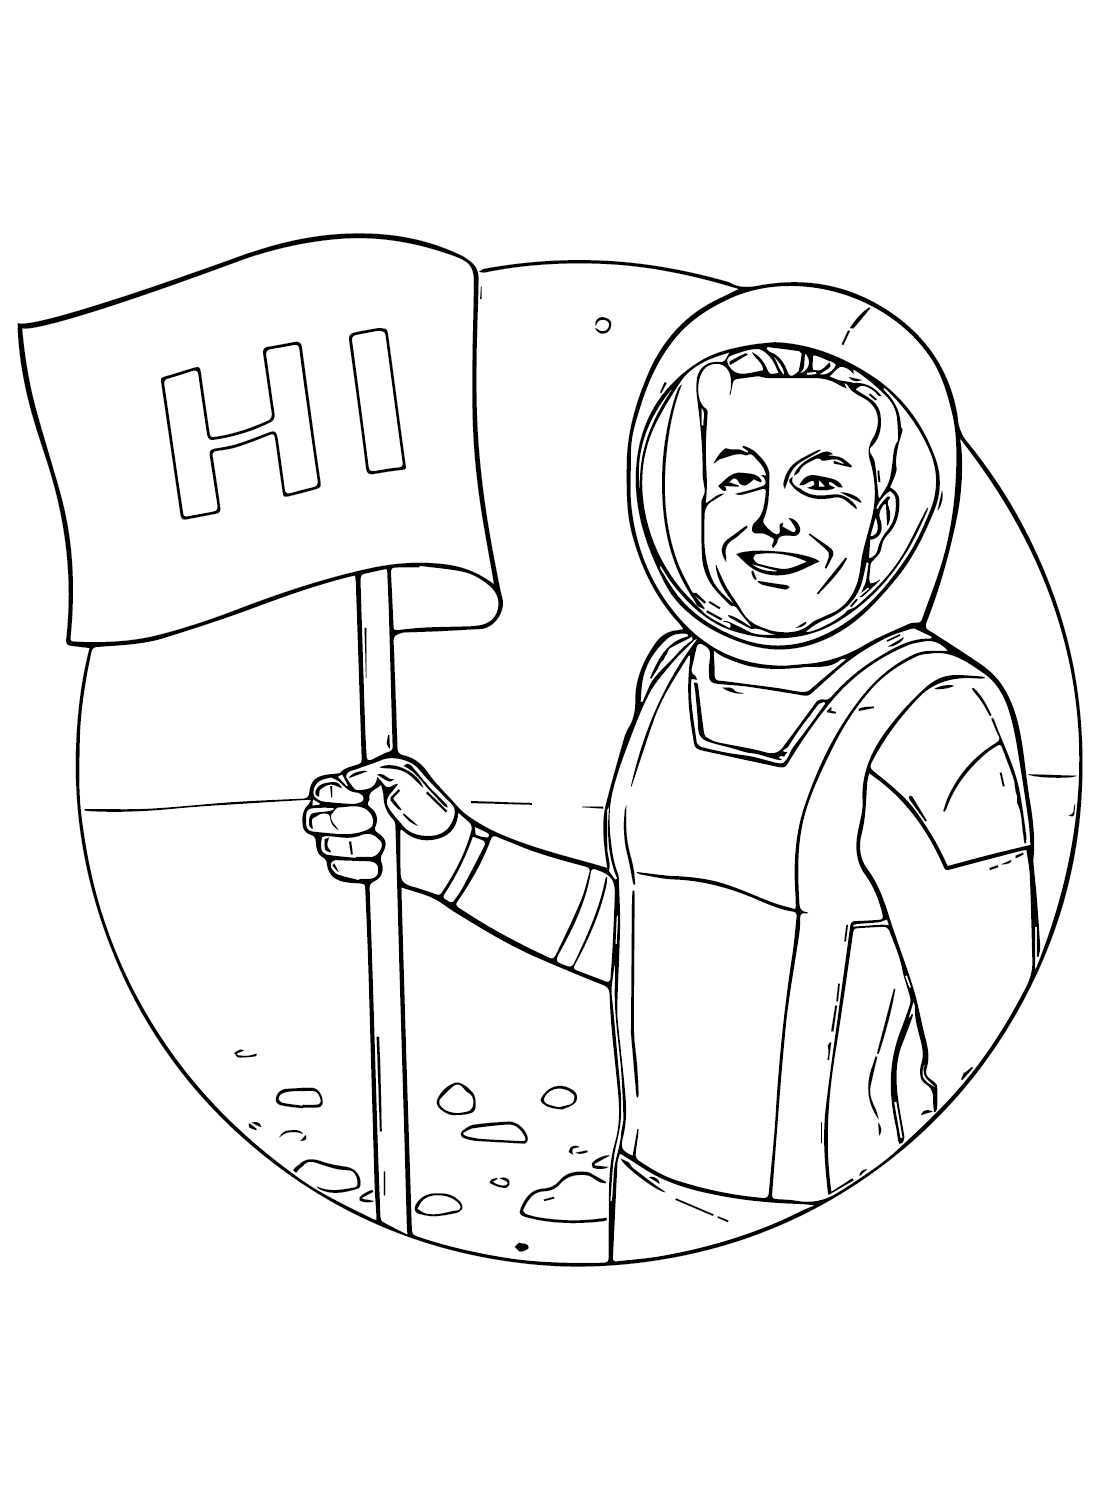 Pagina da colorare di Elon Musk-Astronauta